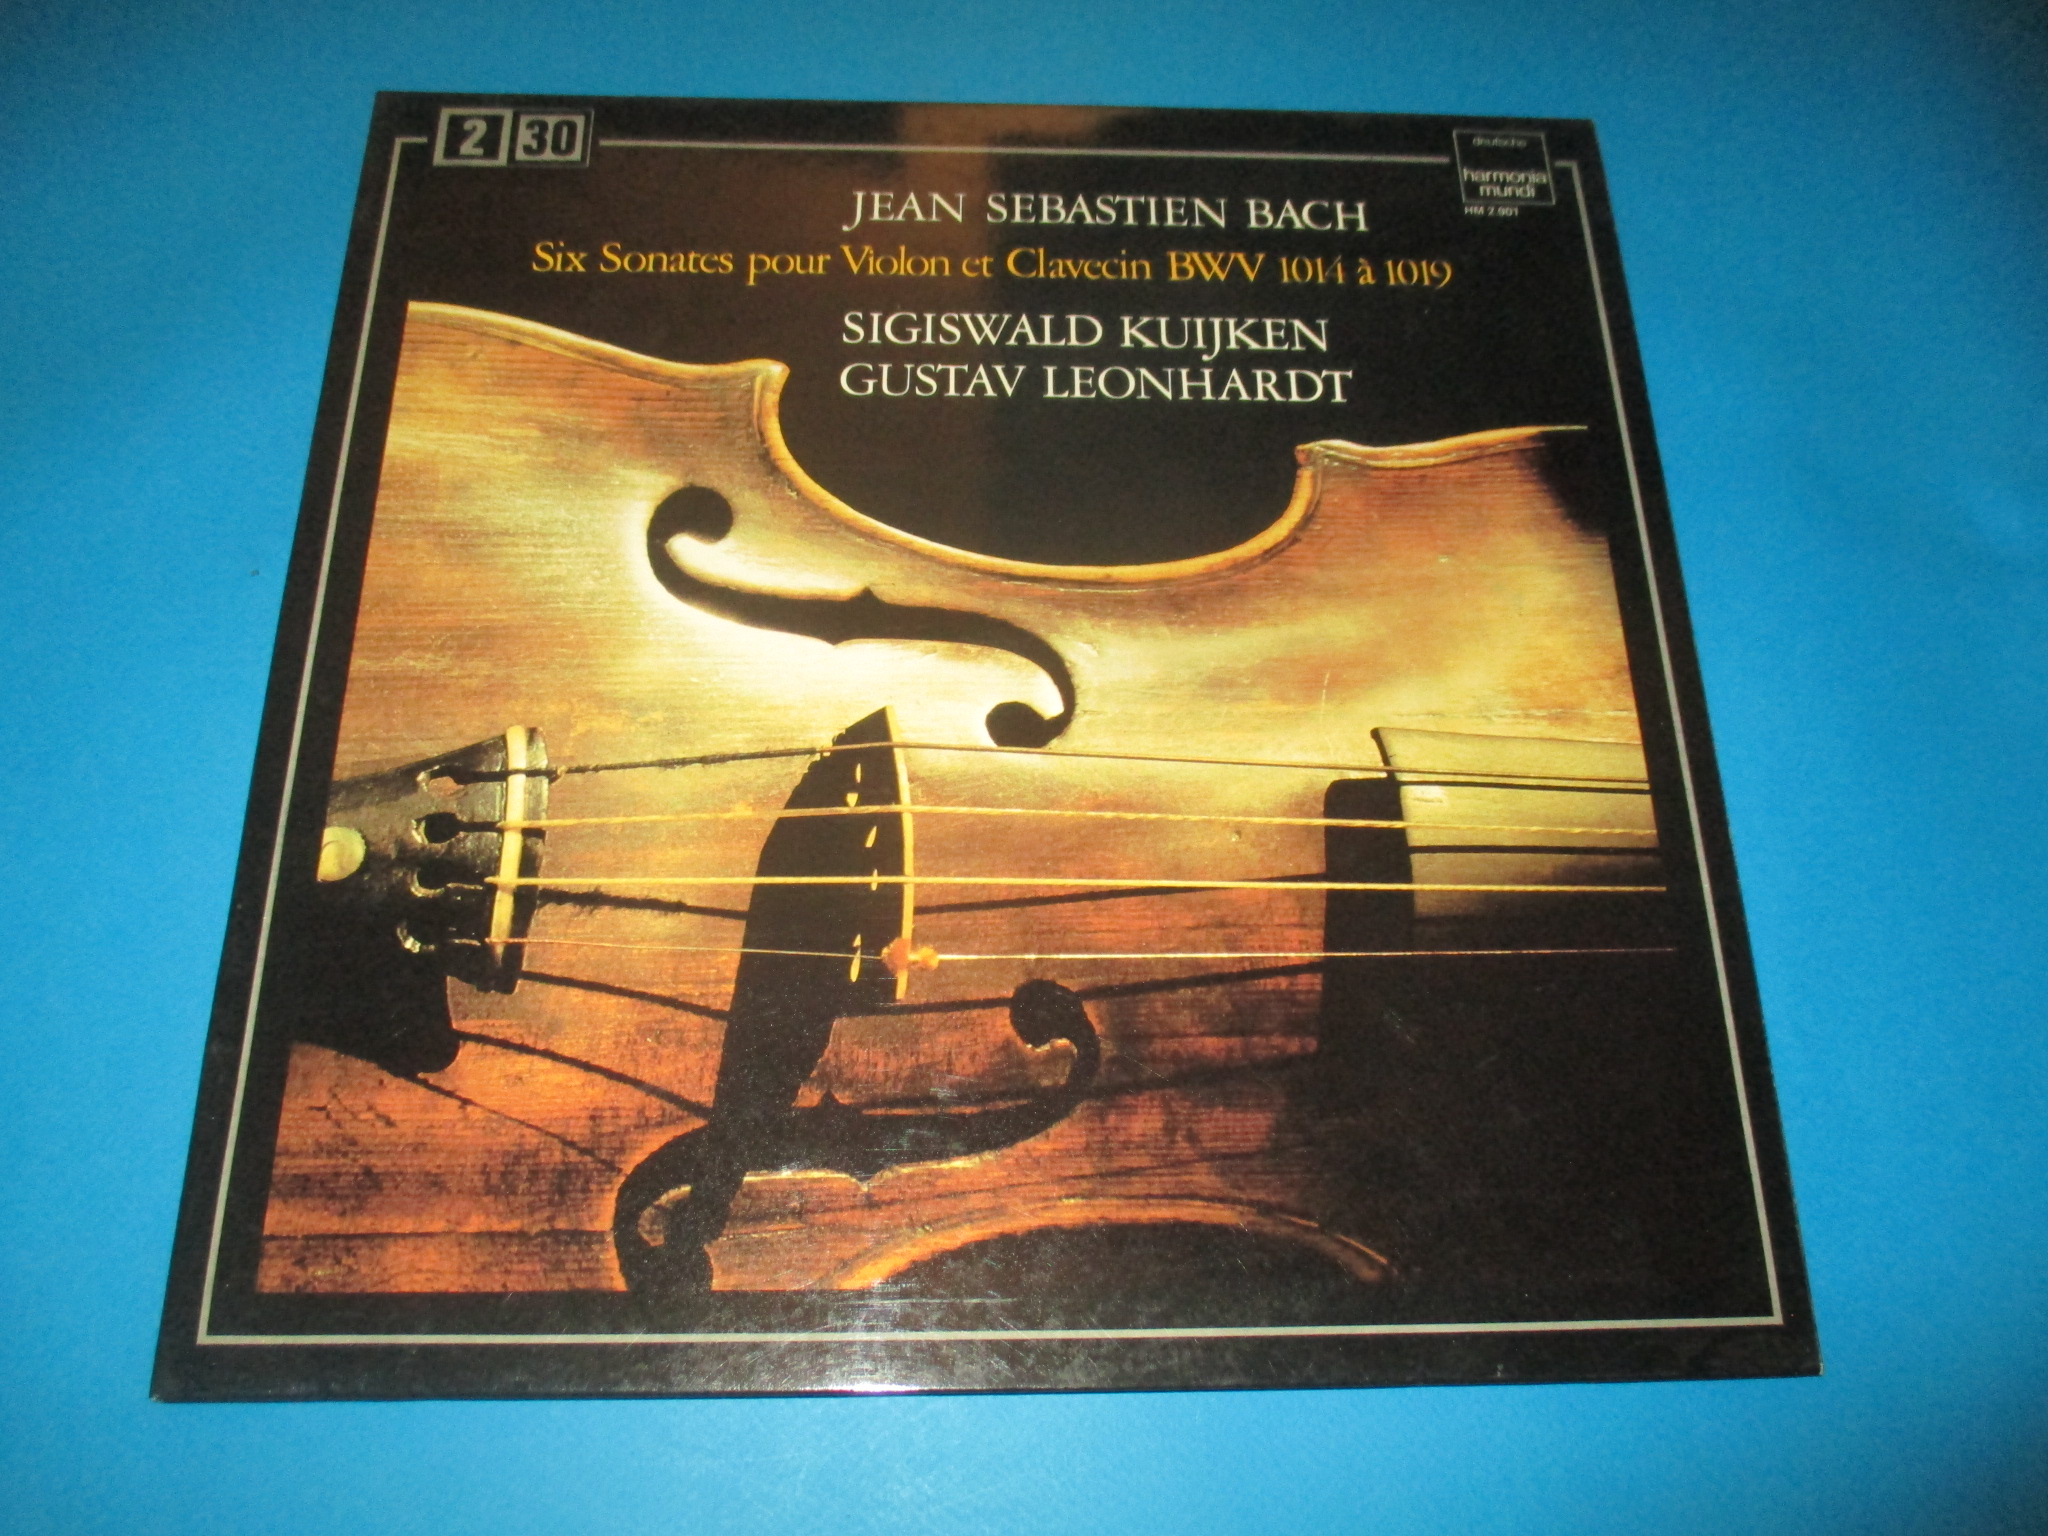 Double disque Jean-Sebastien Bach, Six sonates pour violon et clavecin BWV 1014 à 1019, Sigiswald Kuijken & Gustav Leonhardt, Harmonia Mundi